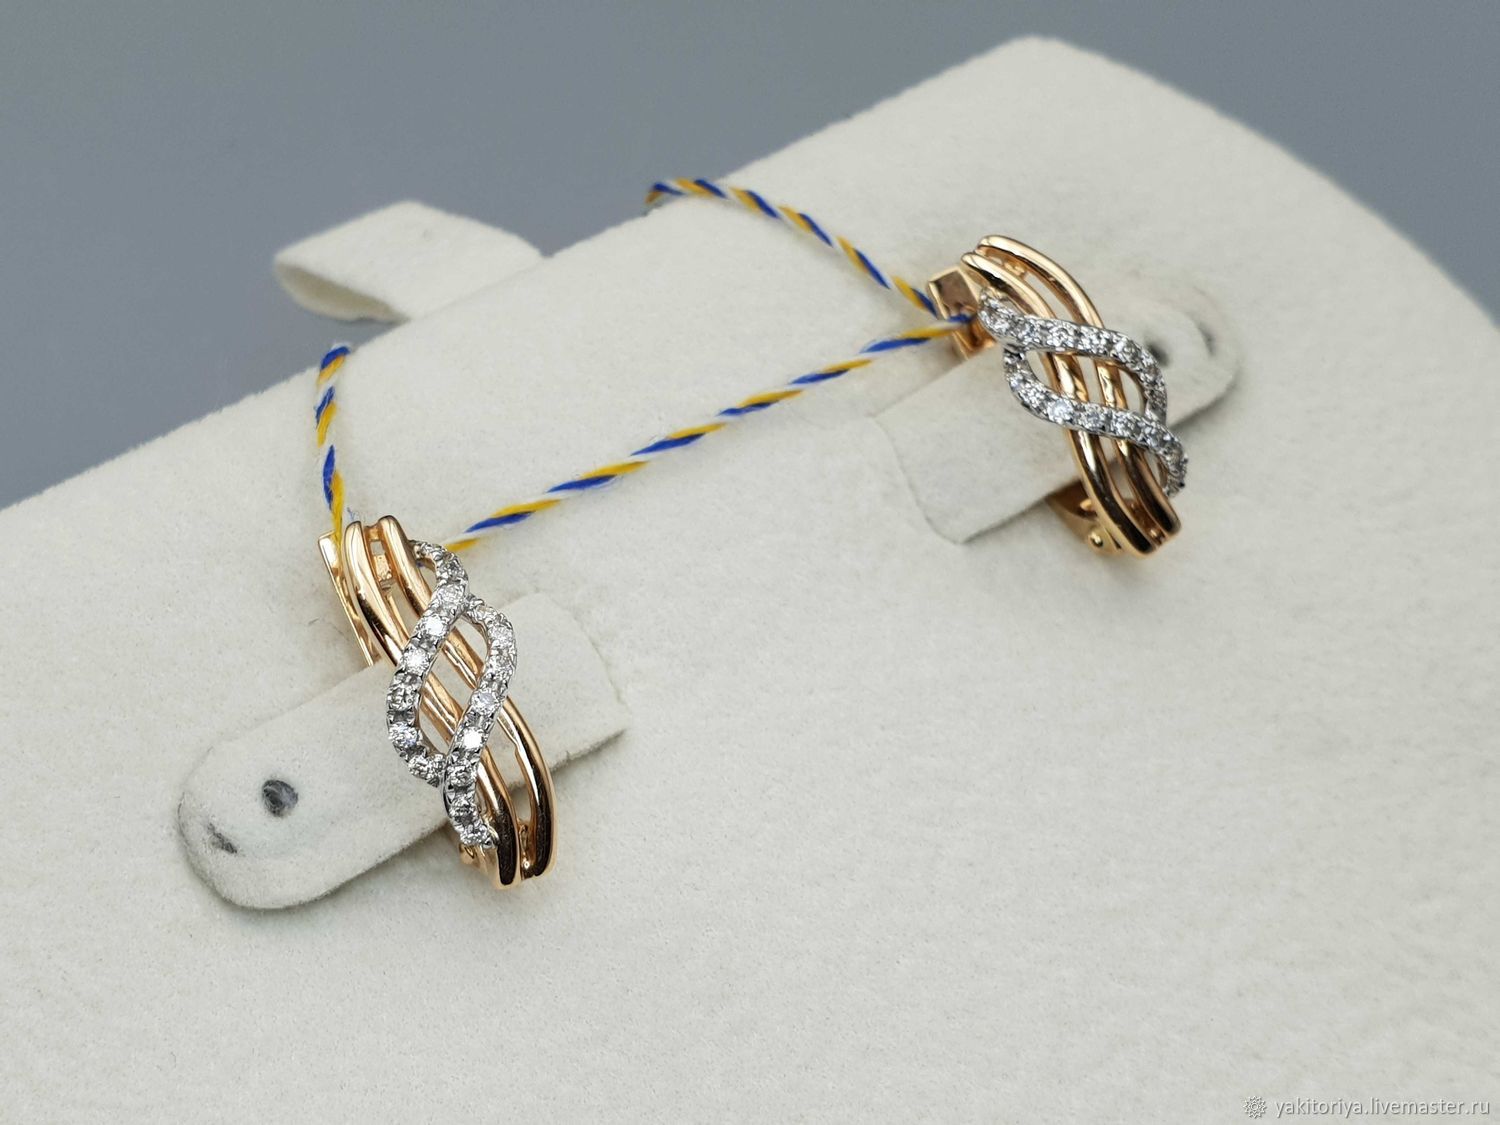 Gold diamond earrings 0,211 ct, Earrings, Moscow,  Фото №1